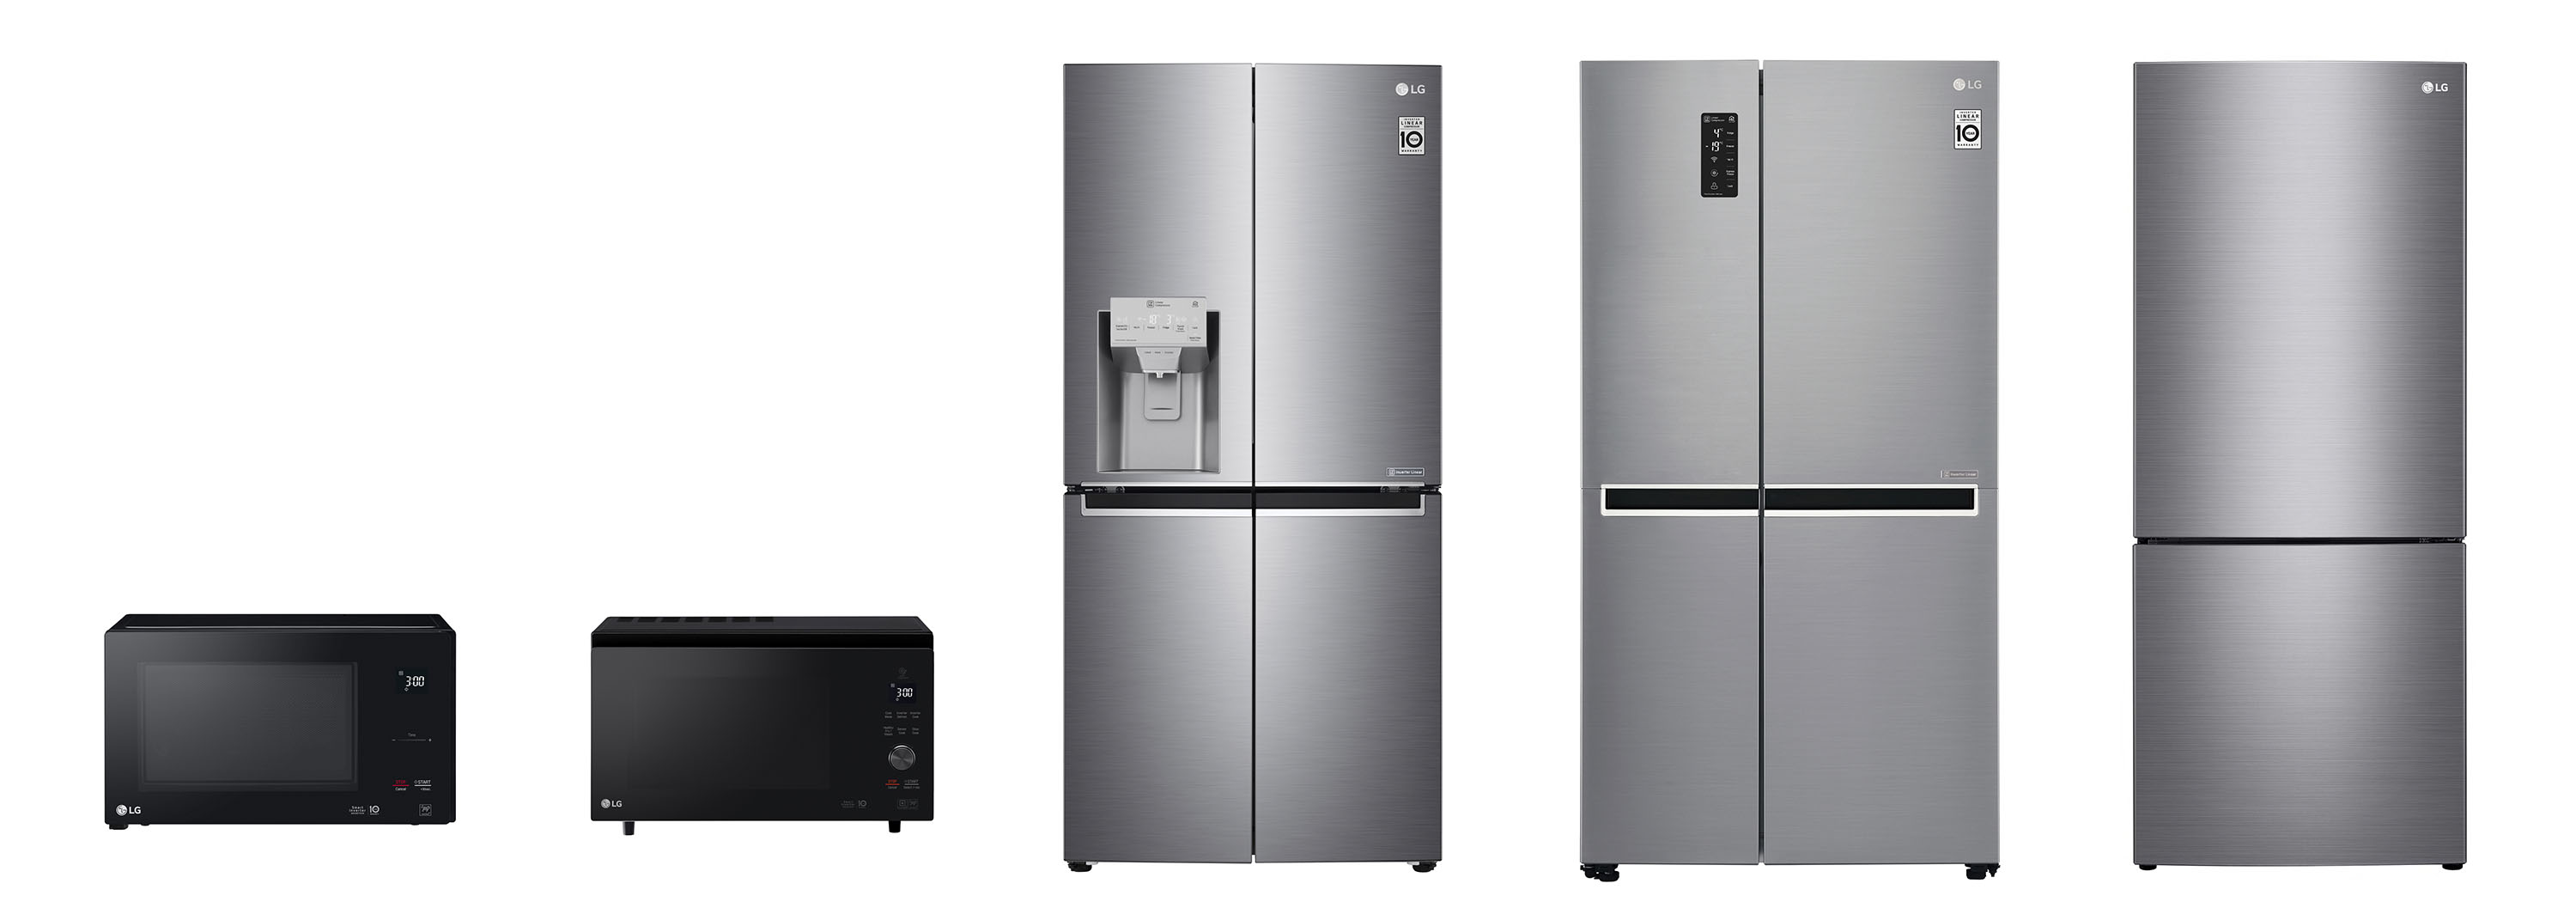 ▲ LG전자 주방가전이 호주 유력 소비자잡지 초이스의 소비자평가 1위를 휩쓸었다. 사진은 왼쪽부터 전자레인지, 슬림 광파오븐, 프렌치도어 냉장고, 양문형 냉장고, 상냉장ㆍ하냉동 냉장고